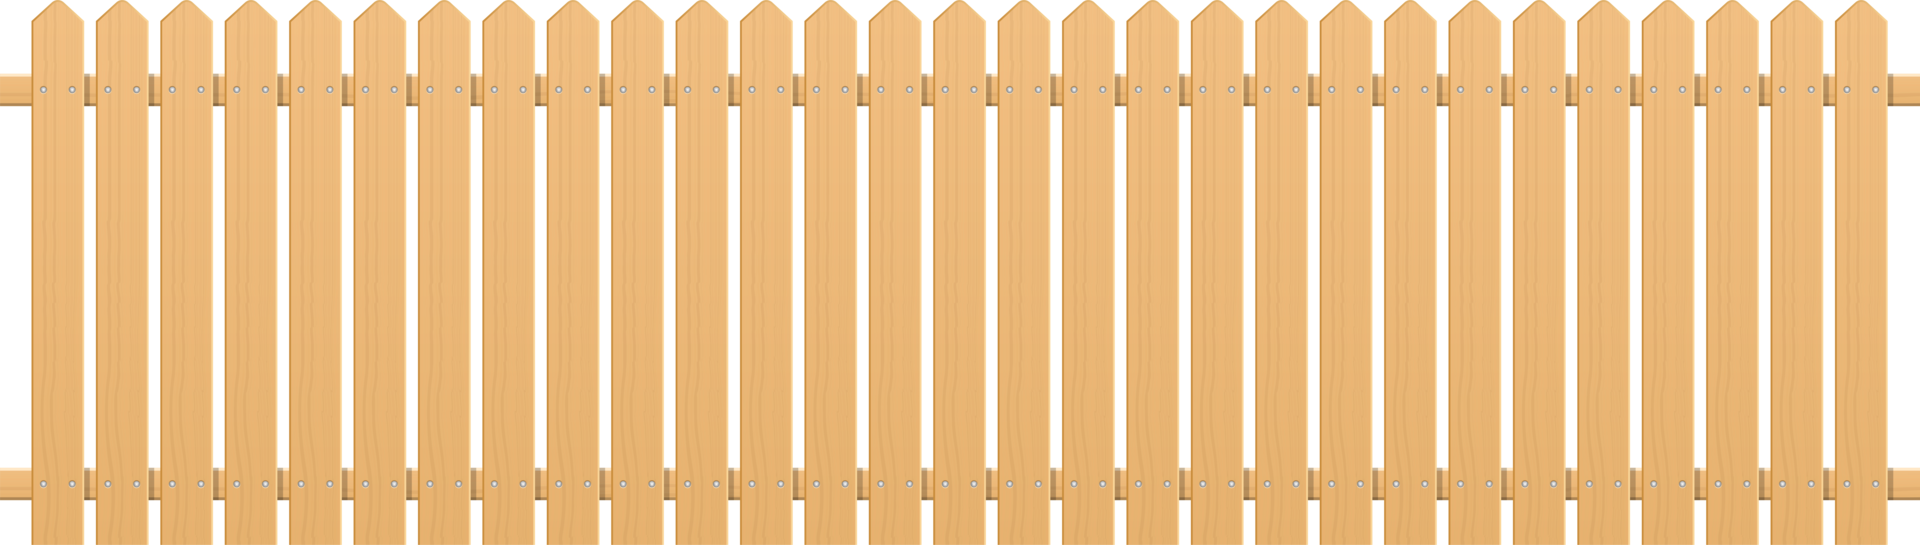 Wooden fence clipart design illustration png